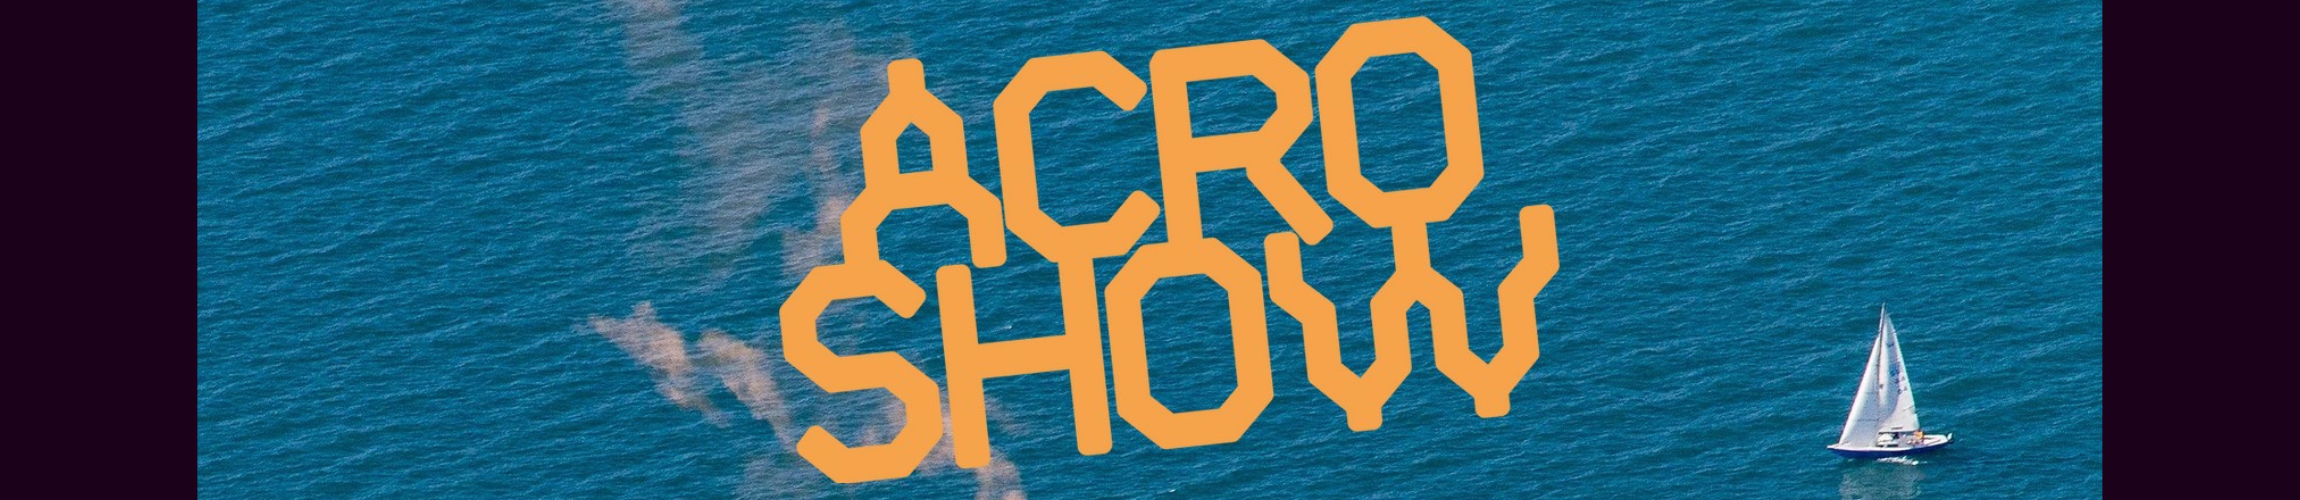 Acro Show